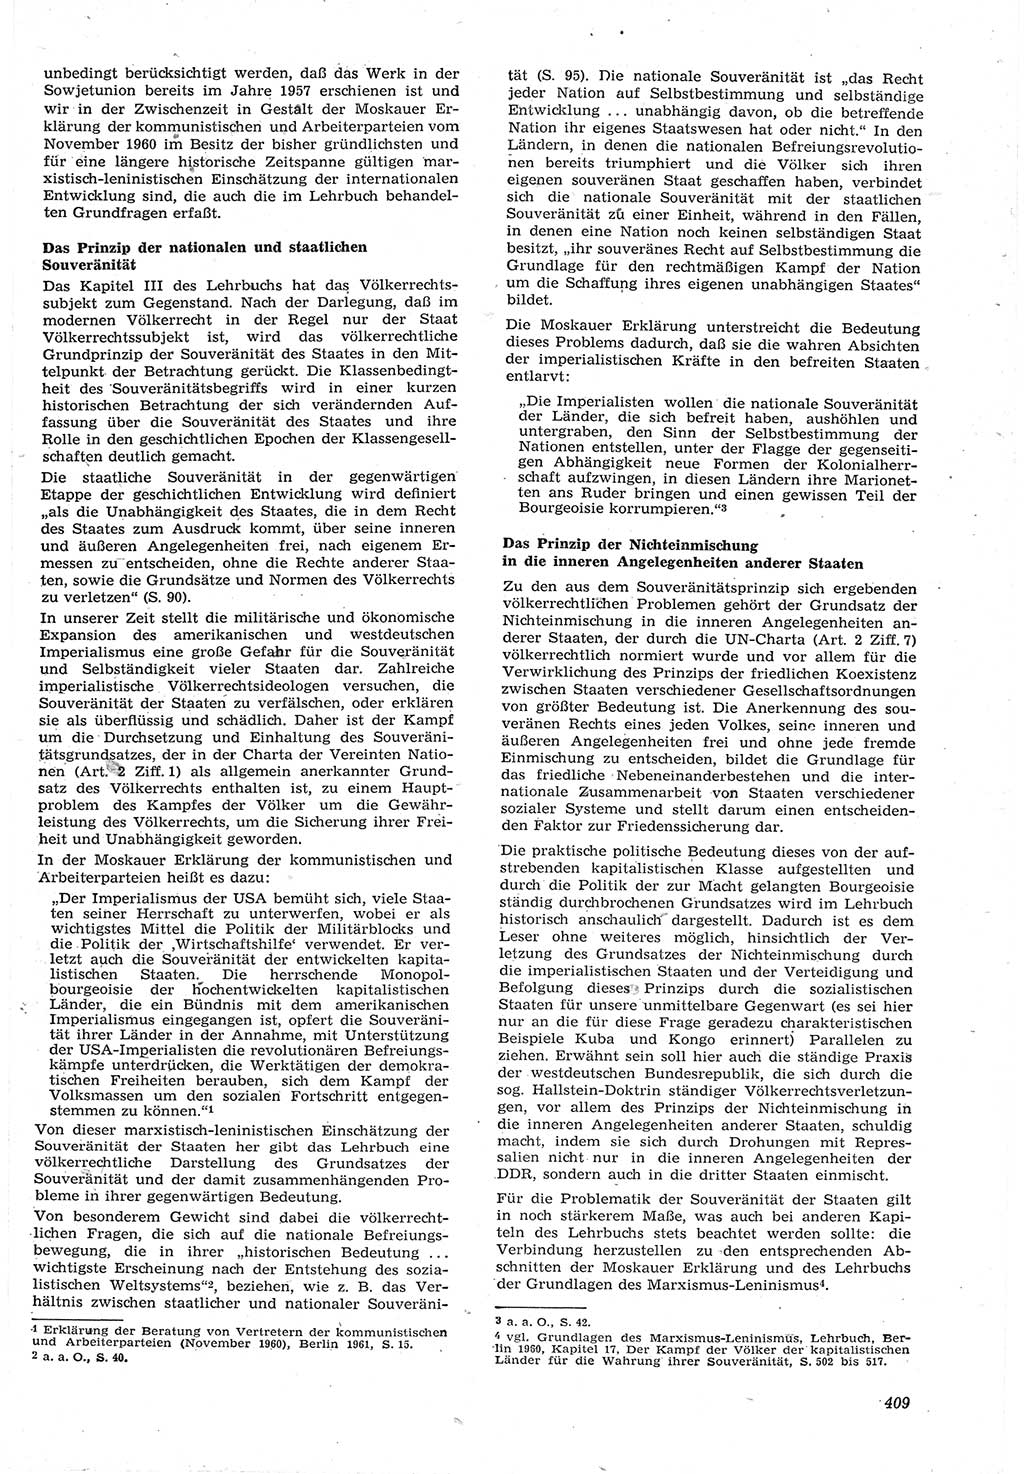 Neue Justiz (NJ), Zeitschrift für Recht und Rechtswissenschaft [Deutsche Demokratische Republik (DDR)], 15. Jahrgang 1961, Seite 409 (NJ DDR 1961, S. 409)